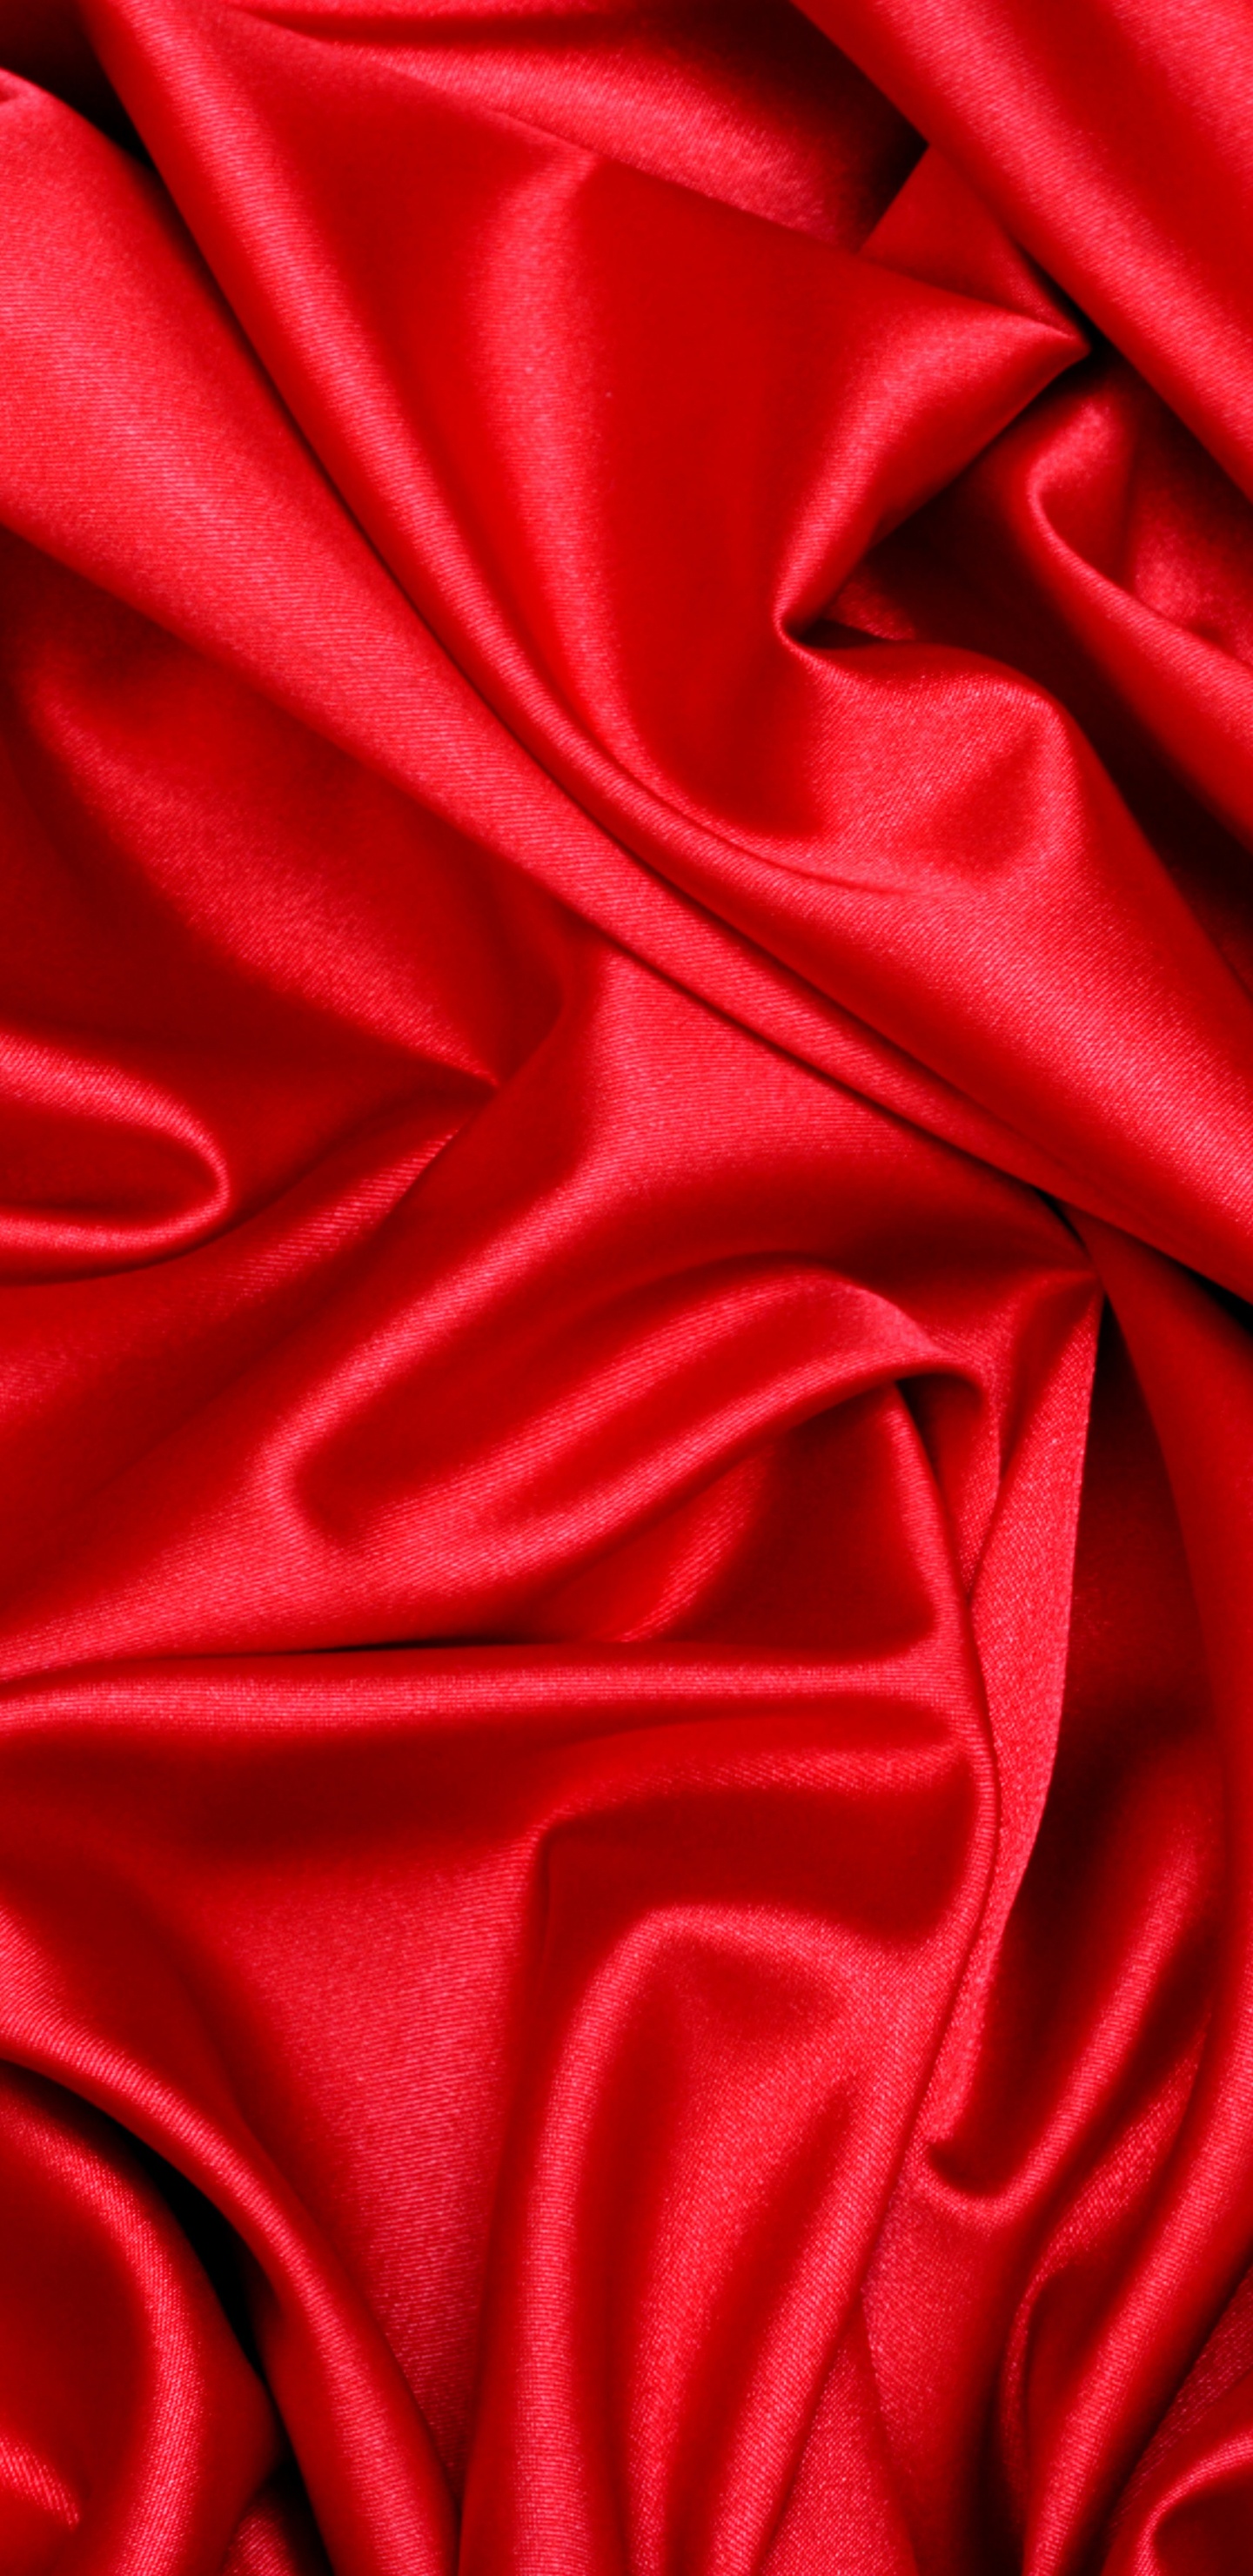 Textil Rojo en Fotografía de Cerca. Wallpaper in 1440x2960 Resolution